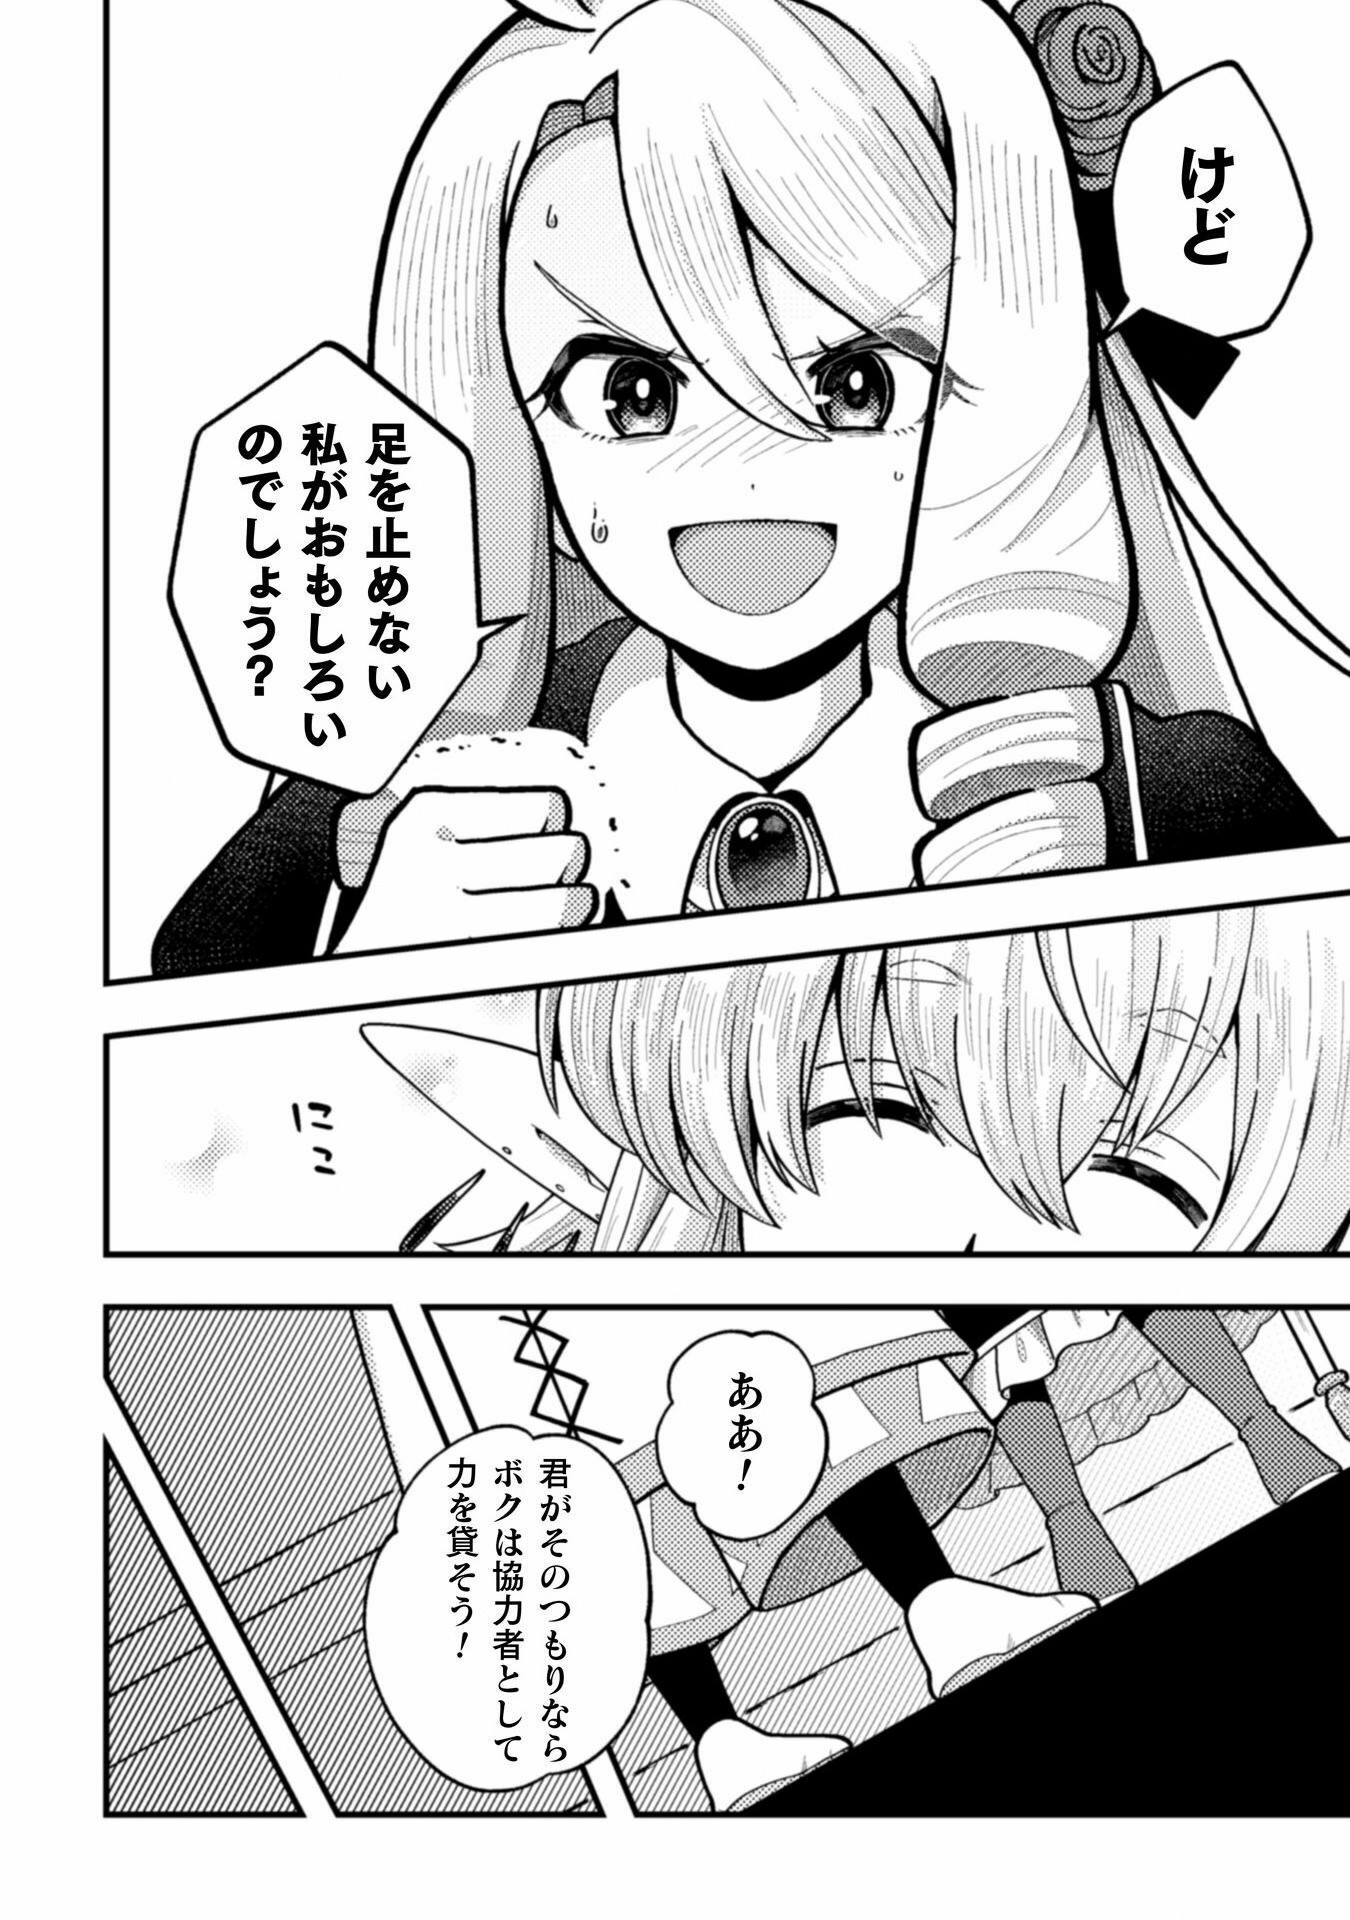 Otome Game no Akuyaku Reijou ni Tensei shitakedo Follower ga Fukyoushiteta Chisiki shikanai - Chapter 22 - Page 10